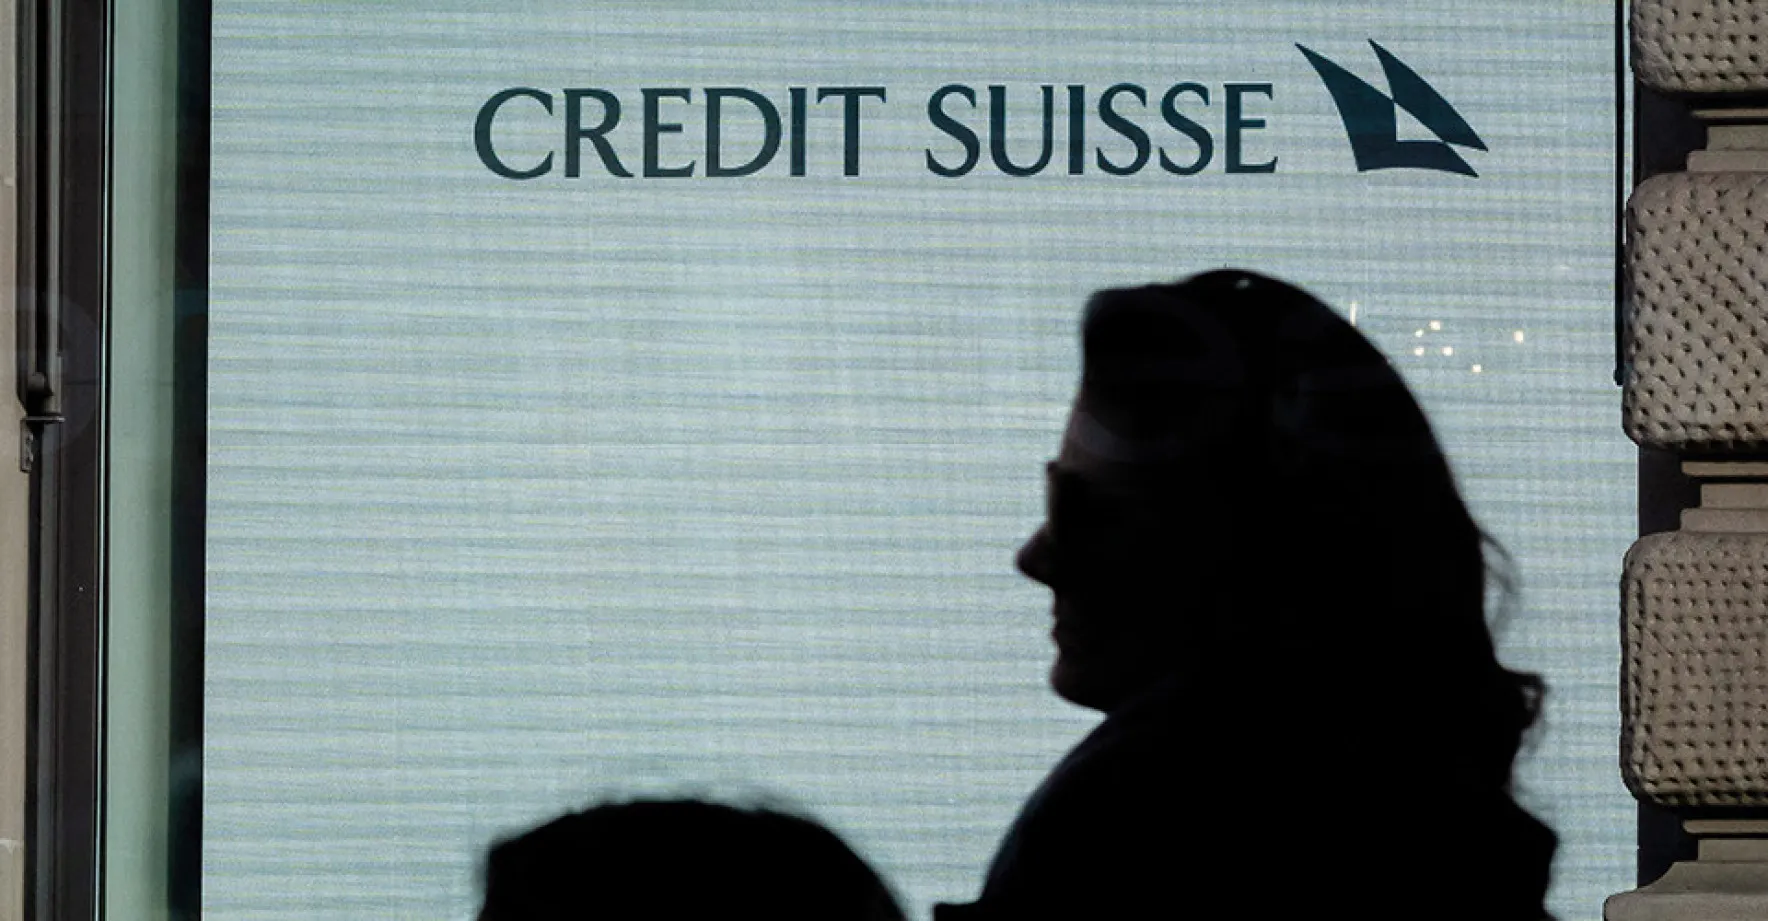 Pád švýcarské ikony. Proč Credit Suisse ztratila důvěru a investoři peníze